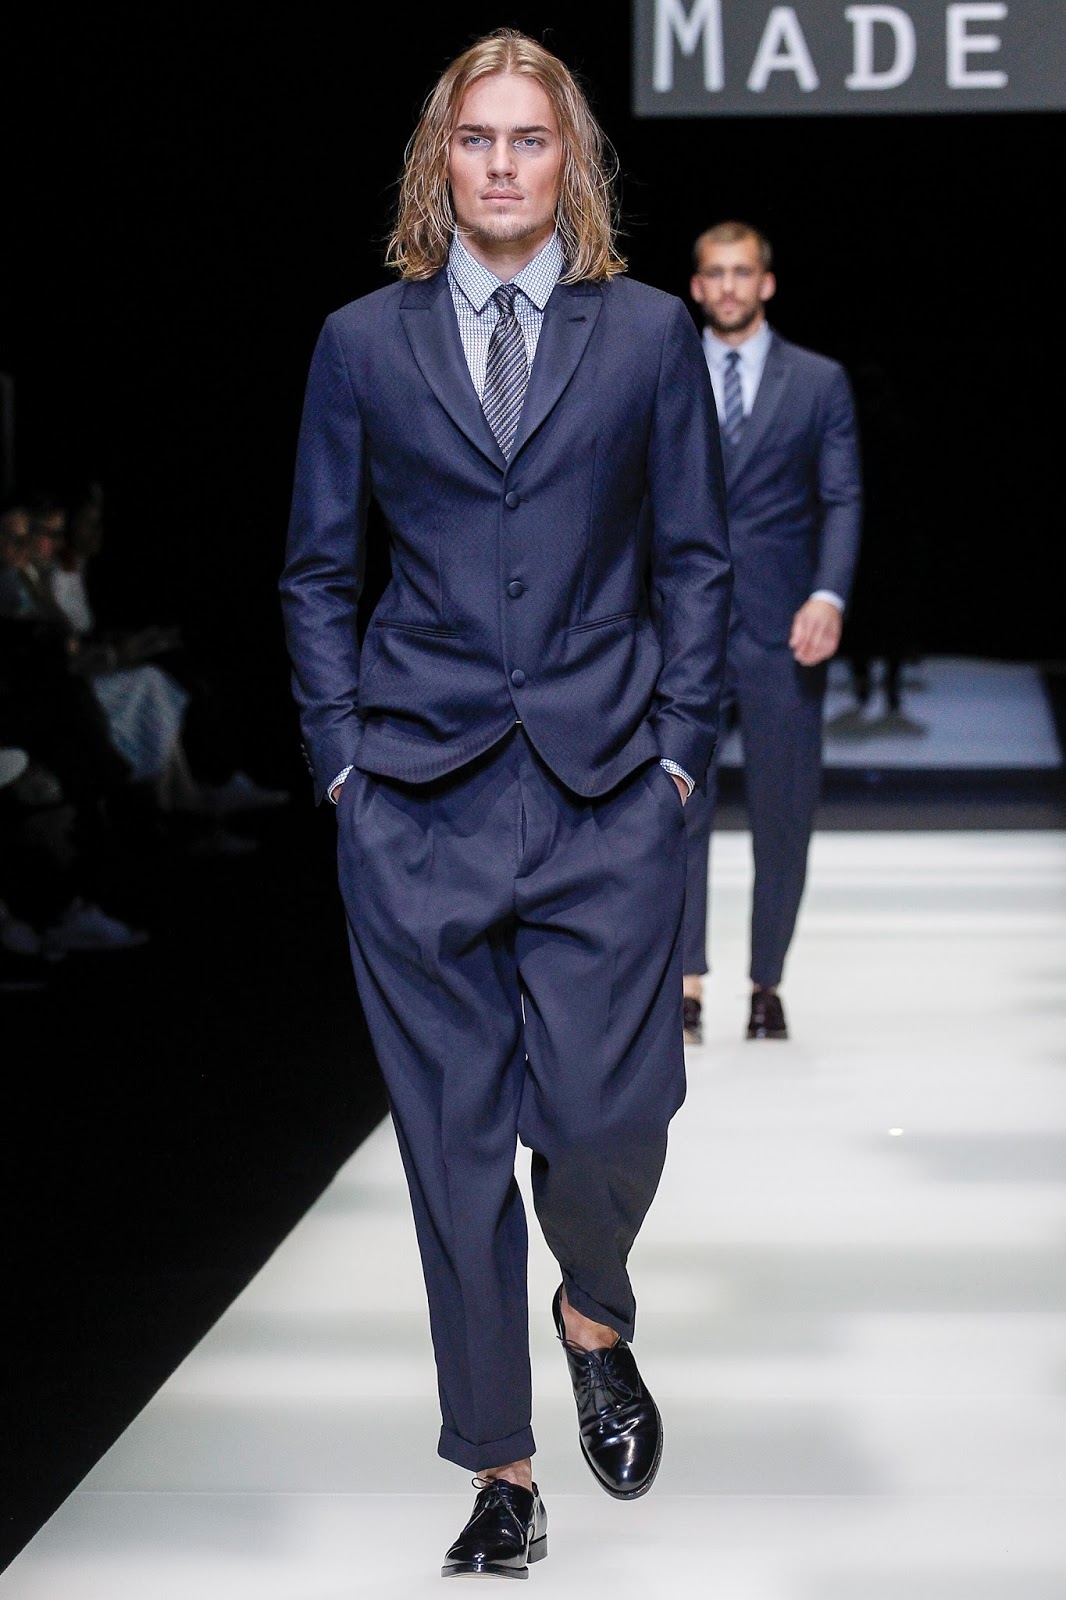 Giorgio Armani, la sfilata "Made in Armani" a Milano Moda Uomo | Sbirilla